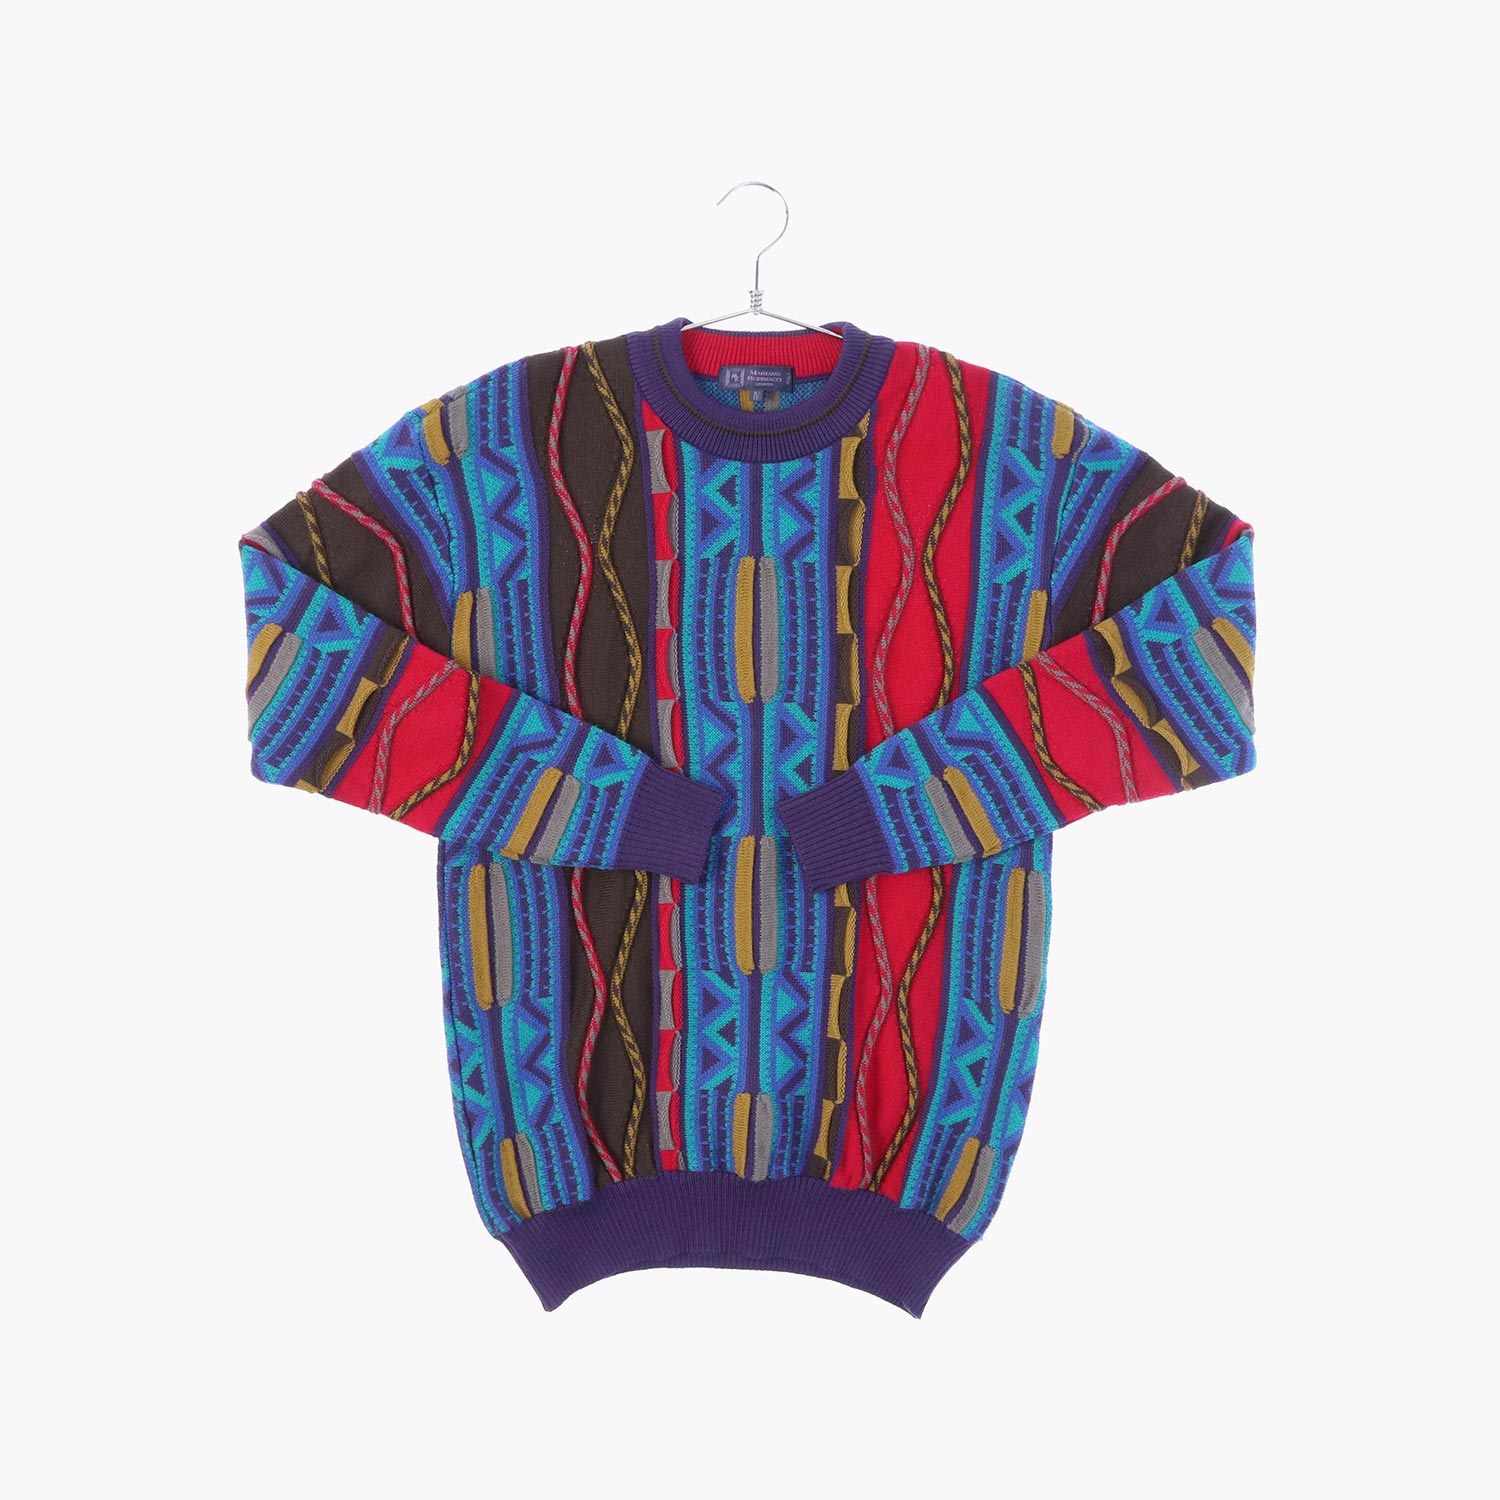 마리아노 루비나찌 울 라운드 패턴 니트/스웨터 공용 L 스윙잉서울